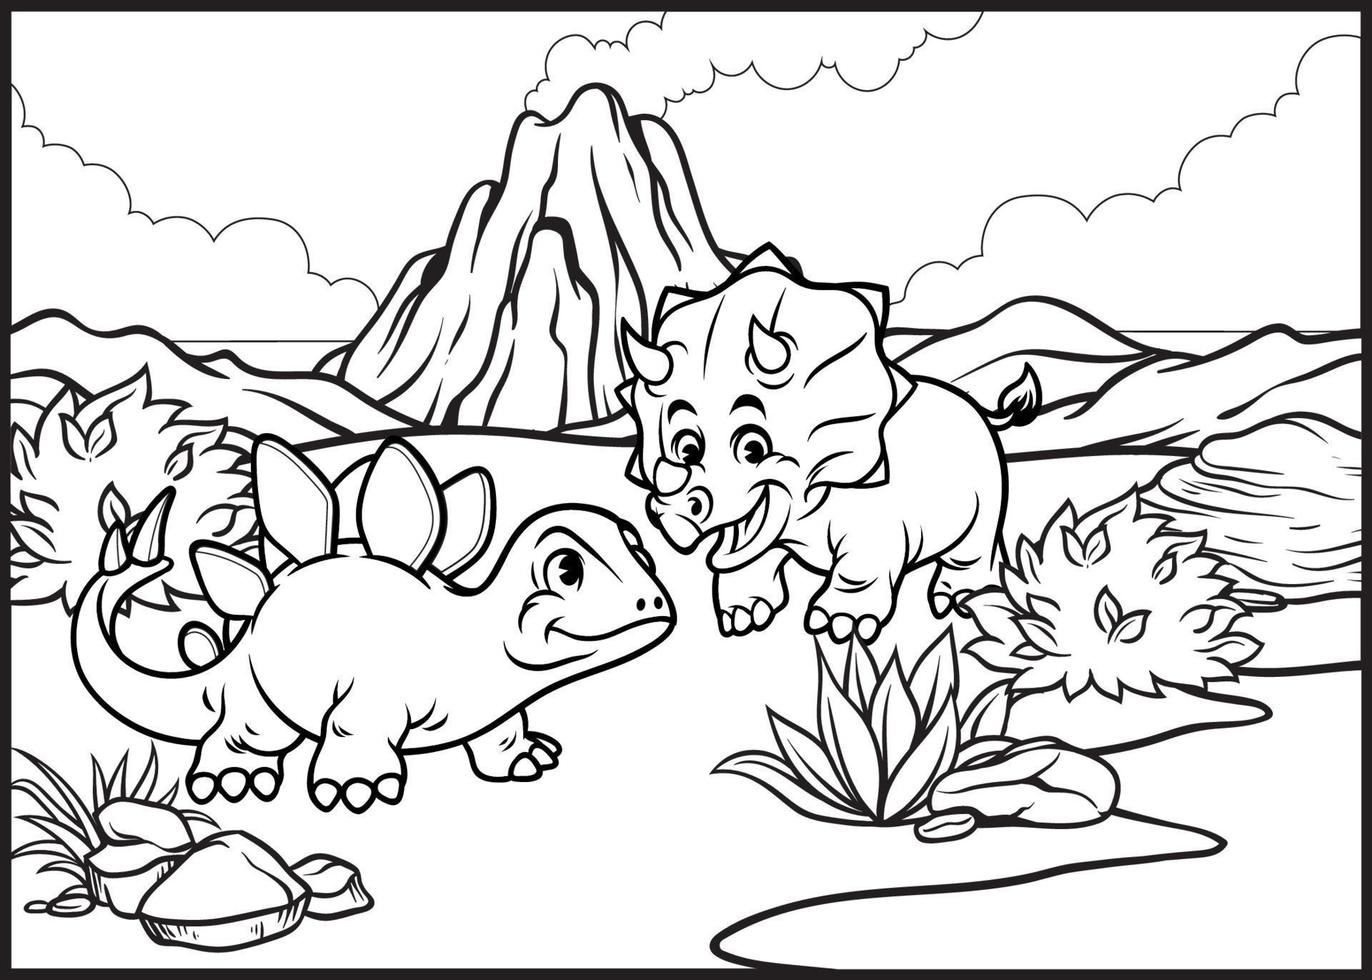 Färbung Seite von Karikatur Triceratops und Stegosaurier vektor